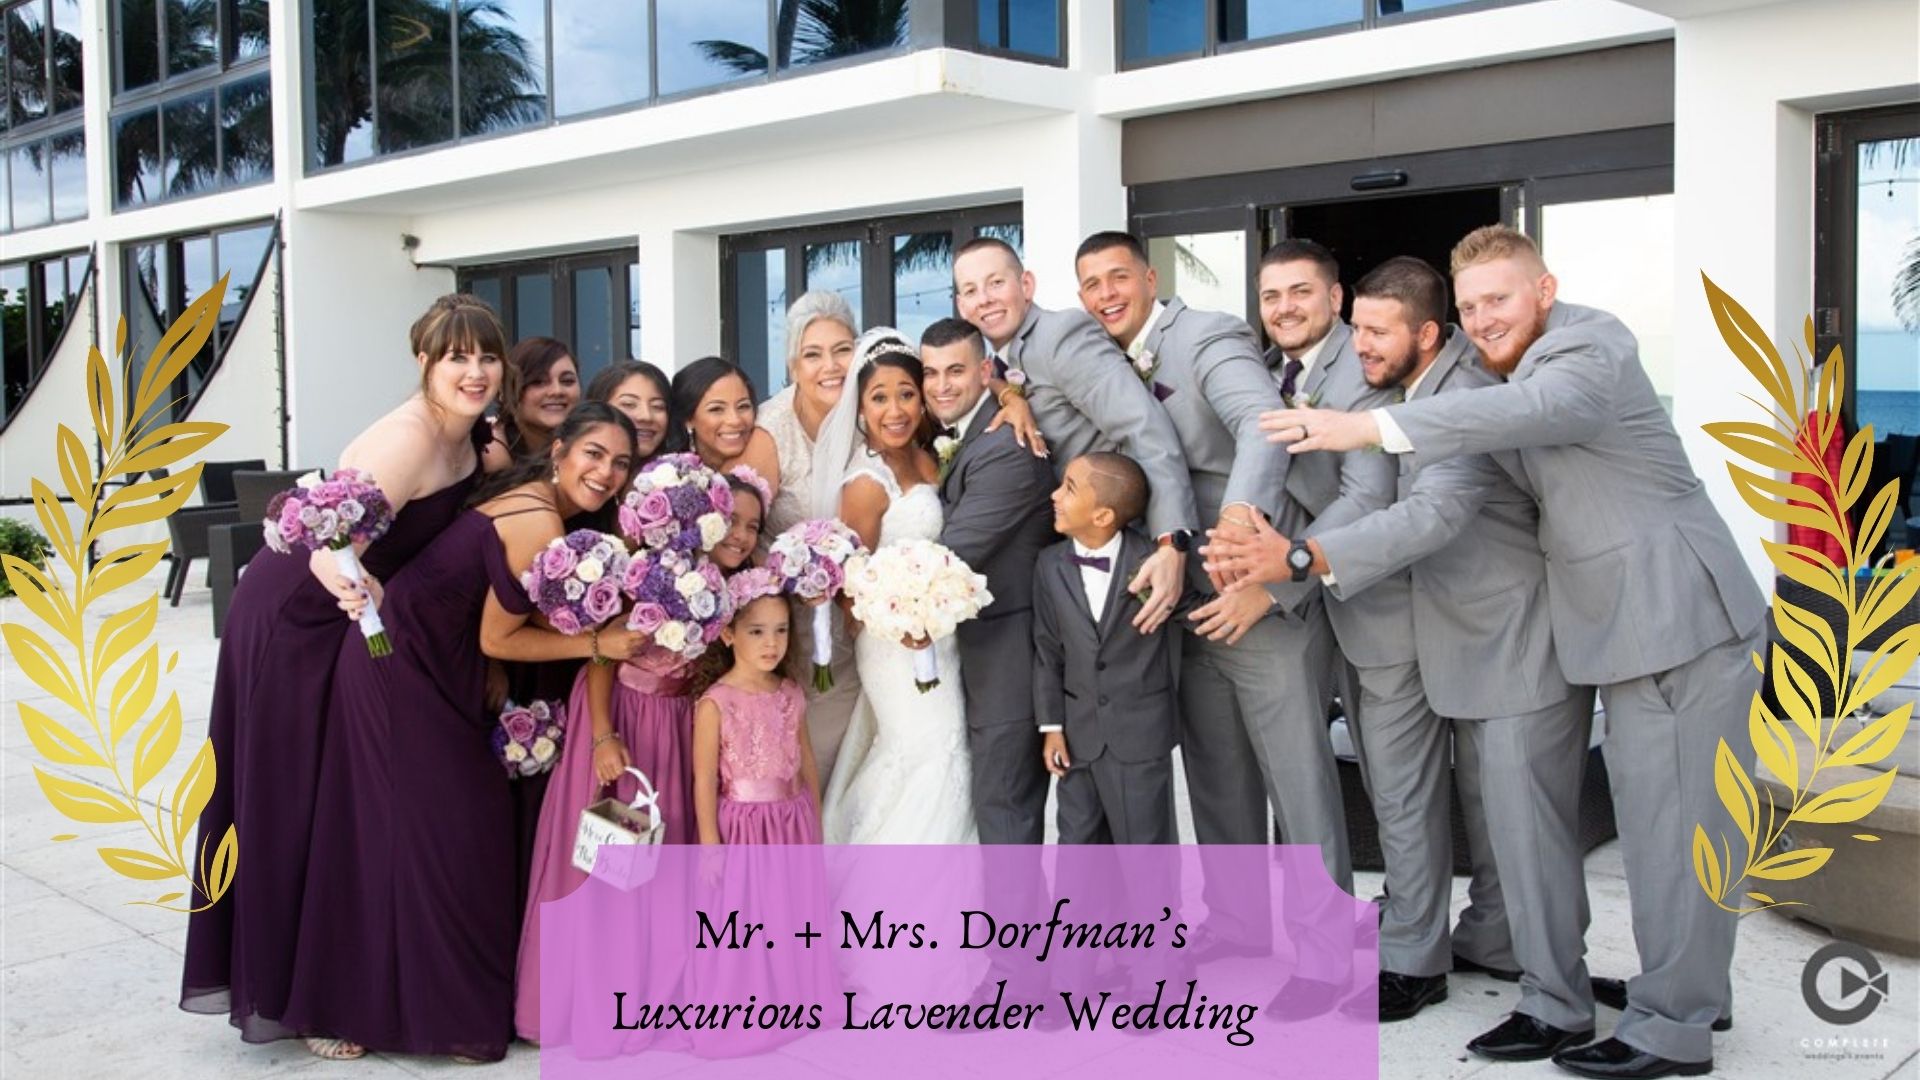 Mr. + Mrs. Dorfman's Luxurious Lavender Wedding • Tideline Ocean Resort • Palm Beach, FL